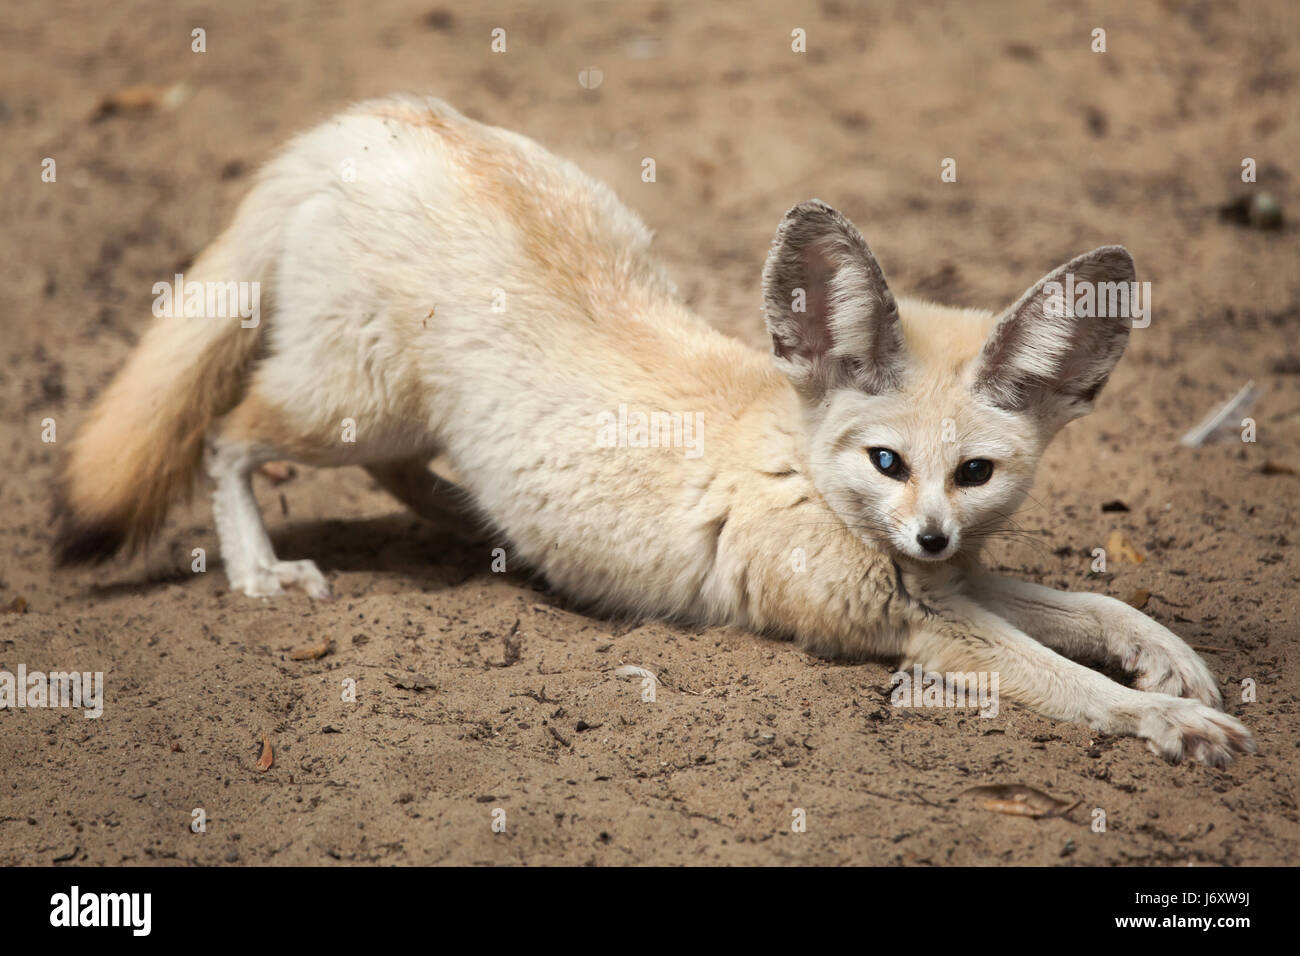 Fennec fox (Vulpes zerda). Wildlife animal. Stock Photo